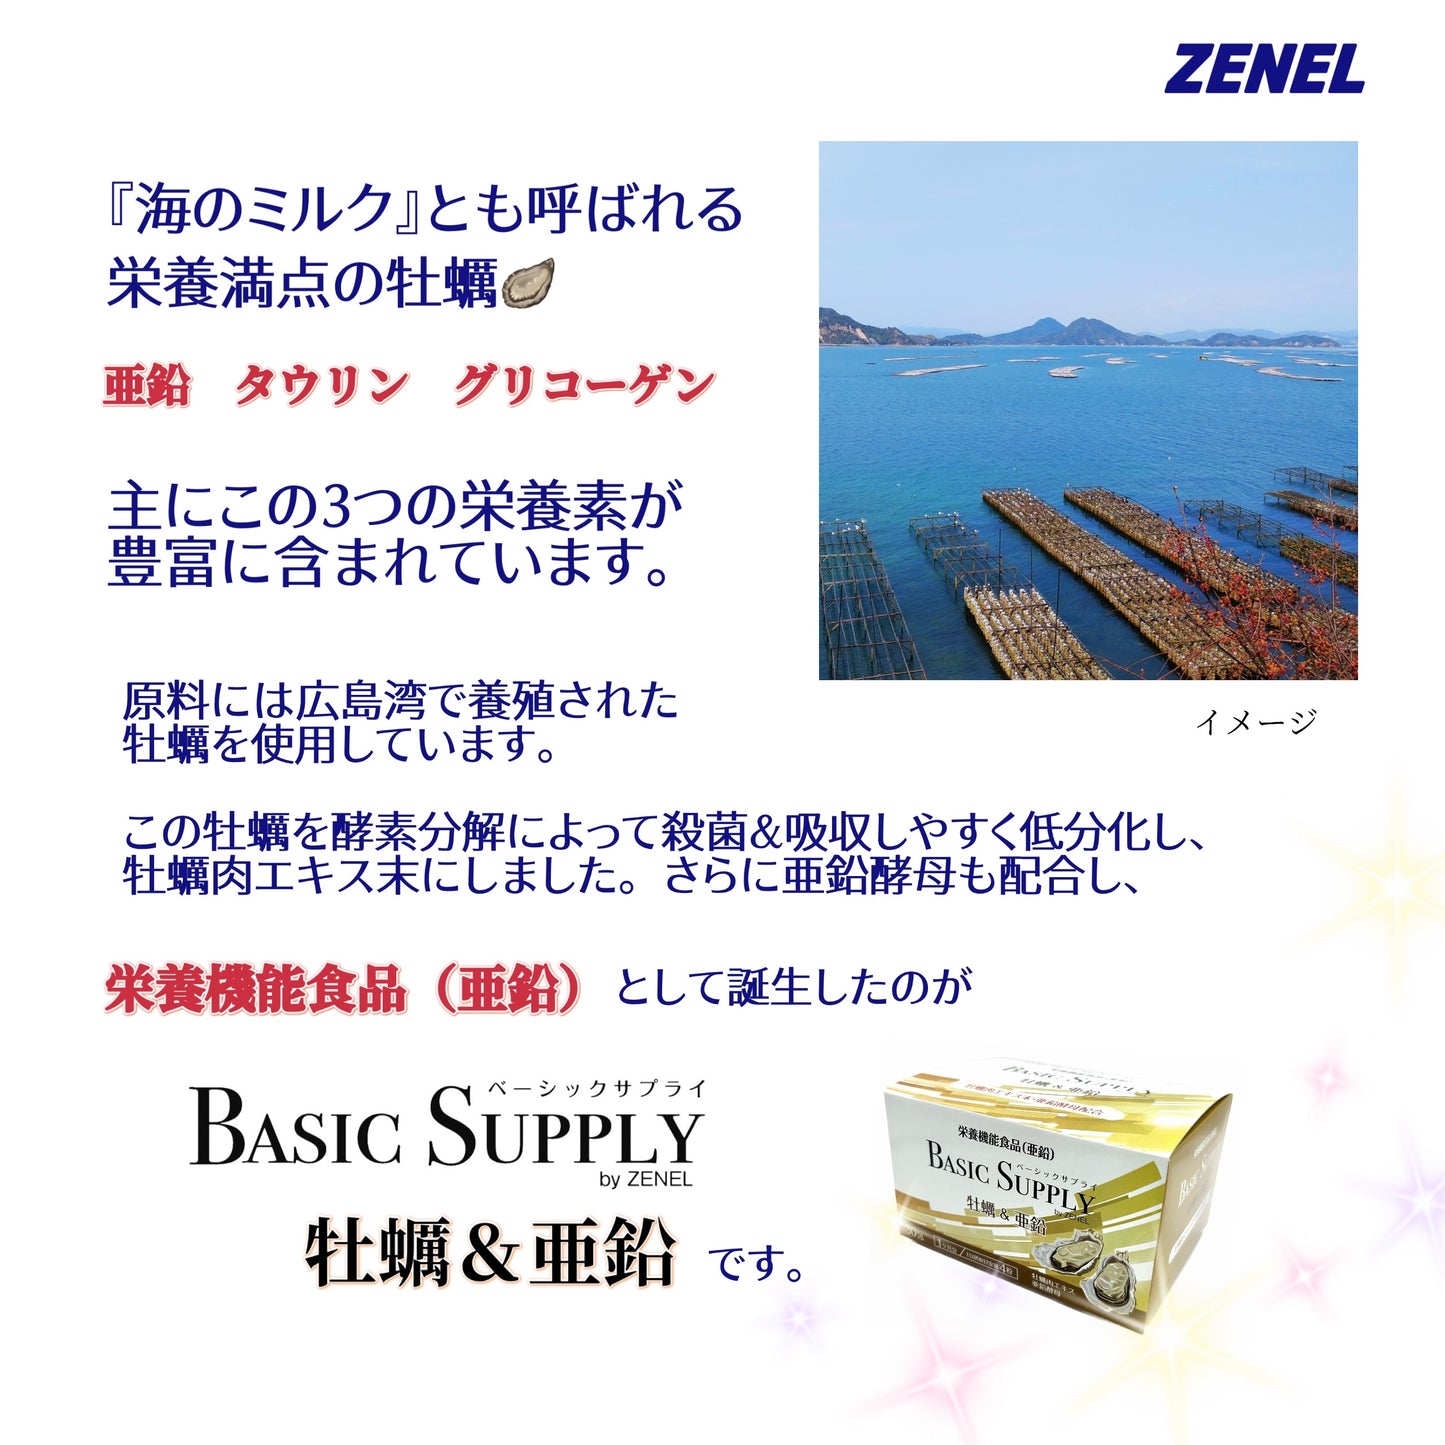 BASIC SUPPLY 牡蠣&亜鉛（30包） – ゼネル オンラインストアー